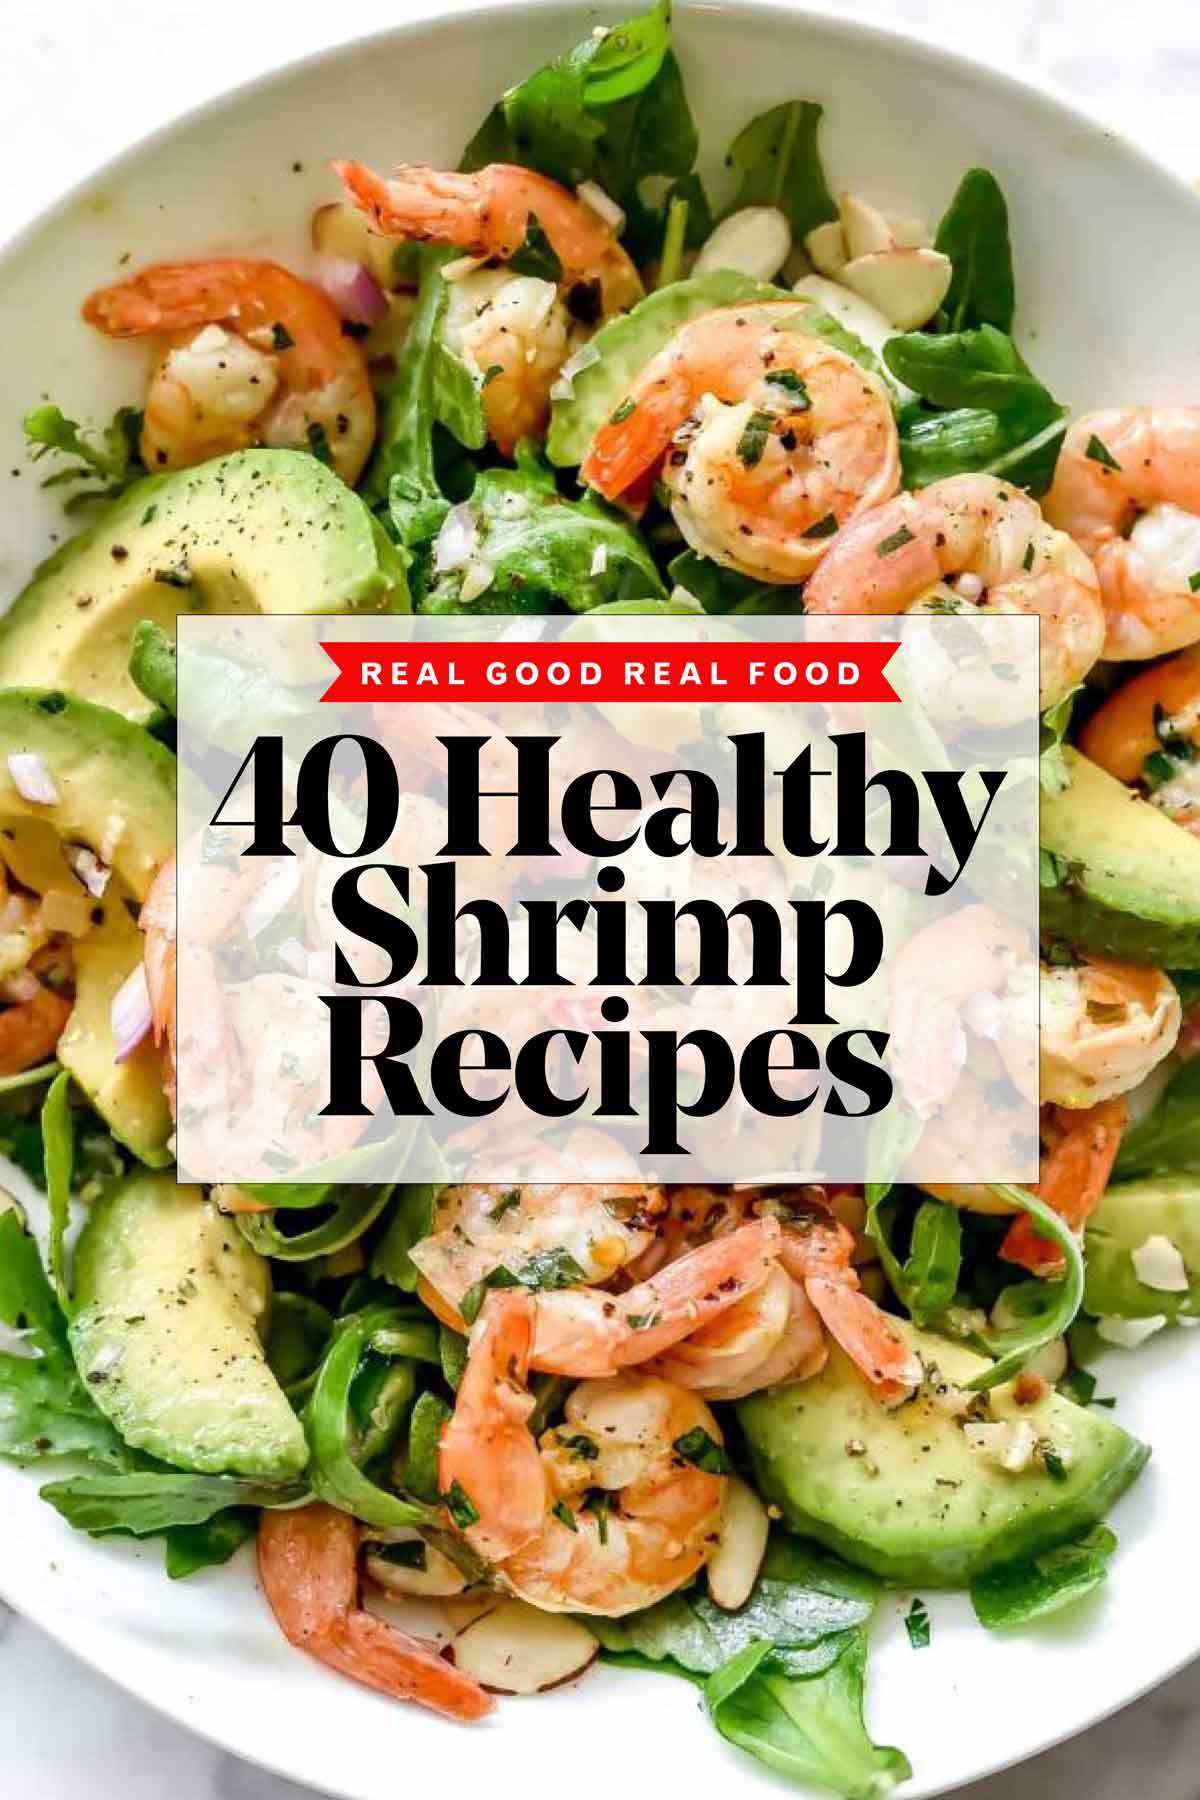 https://www.foodiecrush.com/wp-content/uploads/2018/03/40-Shrimp-Recipes-foodiecrush.com_.jpg